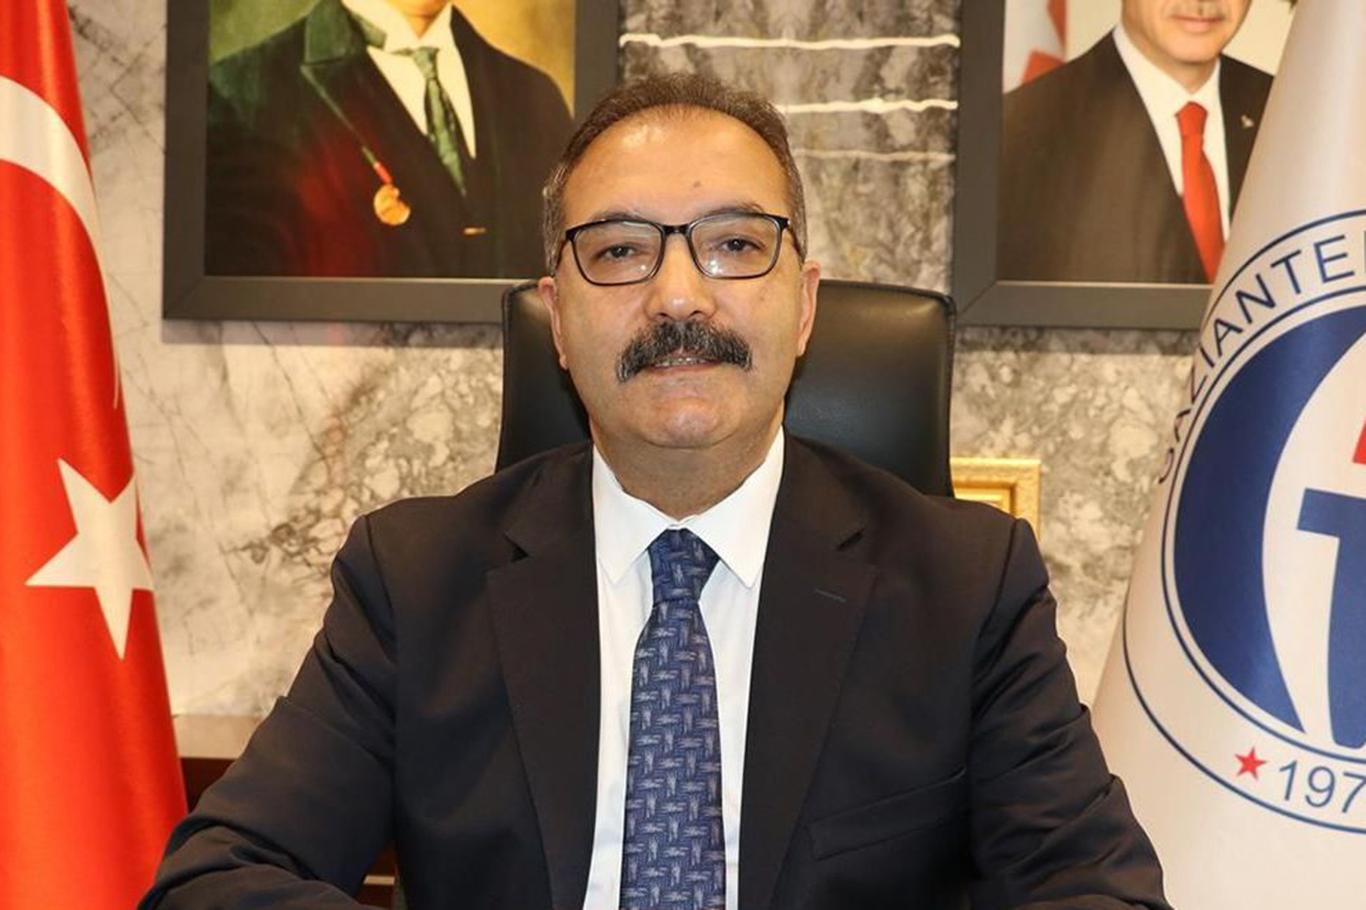 Gaziantep Üniversitesi Rektörü Gür: 15 Temmuz tarihin kaydettiği en hain işgal girişimidir